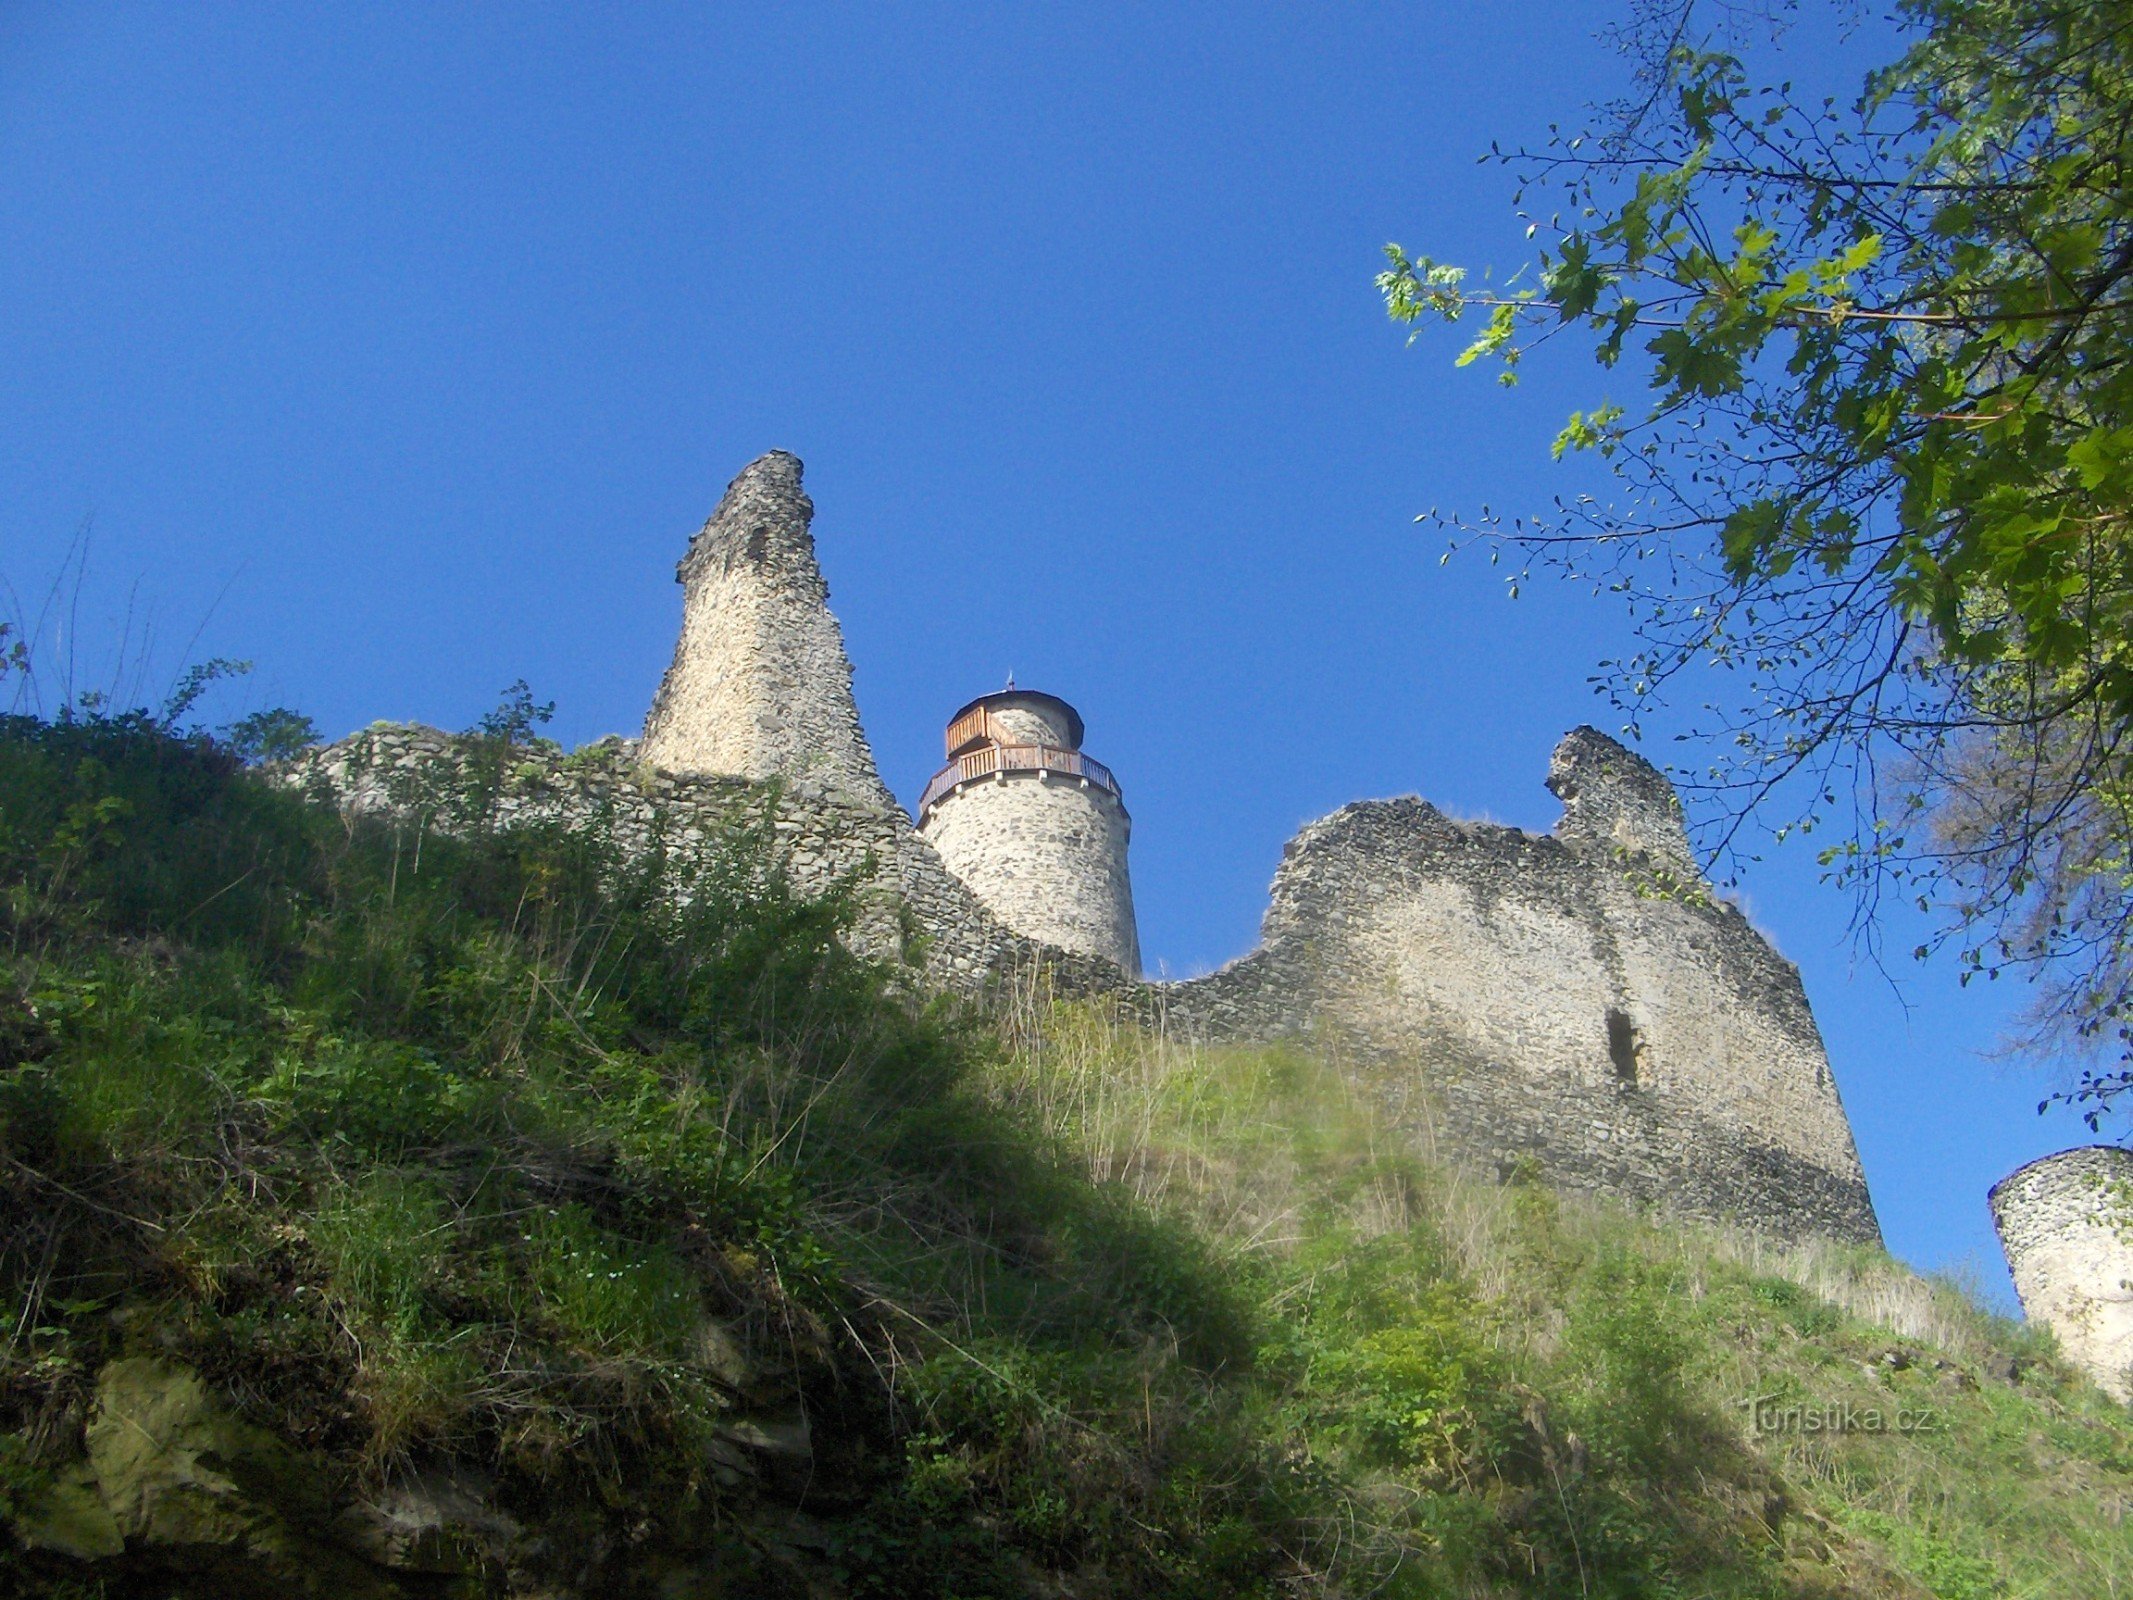 コストムラティ城の見張り塔。